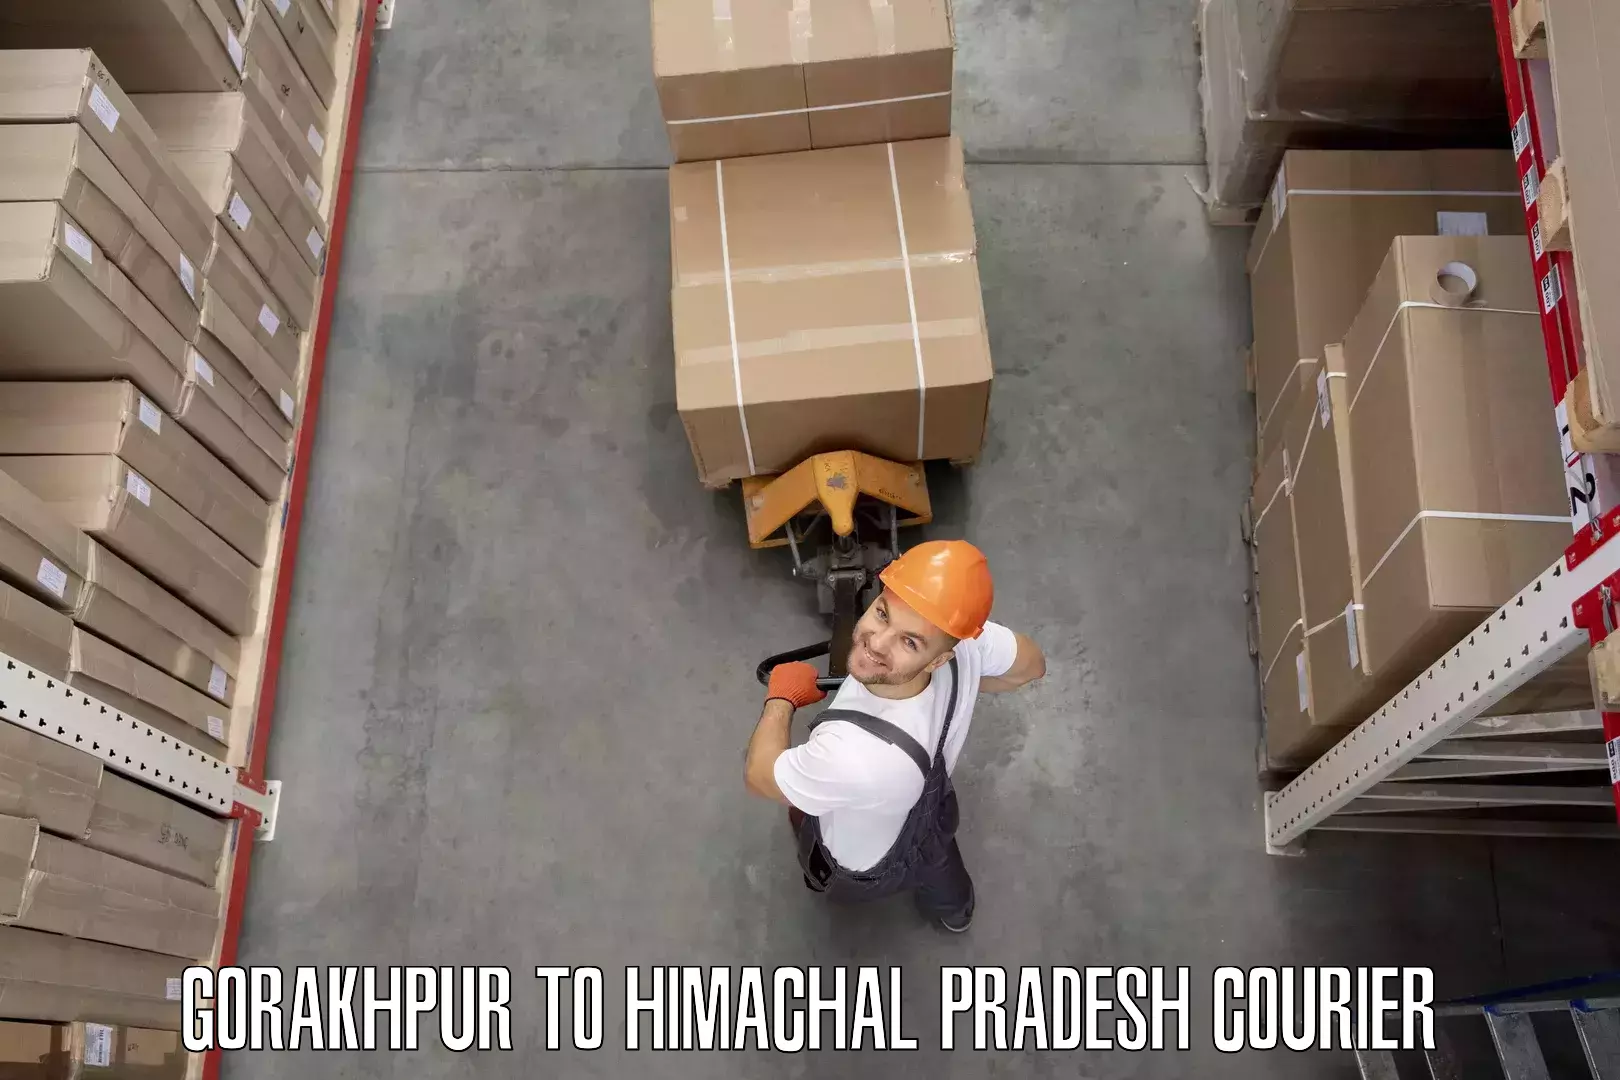 Furniture delivery service Gorakhpur to Joginder Nagar